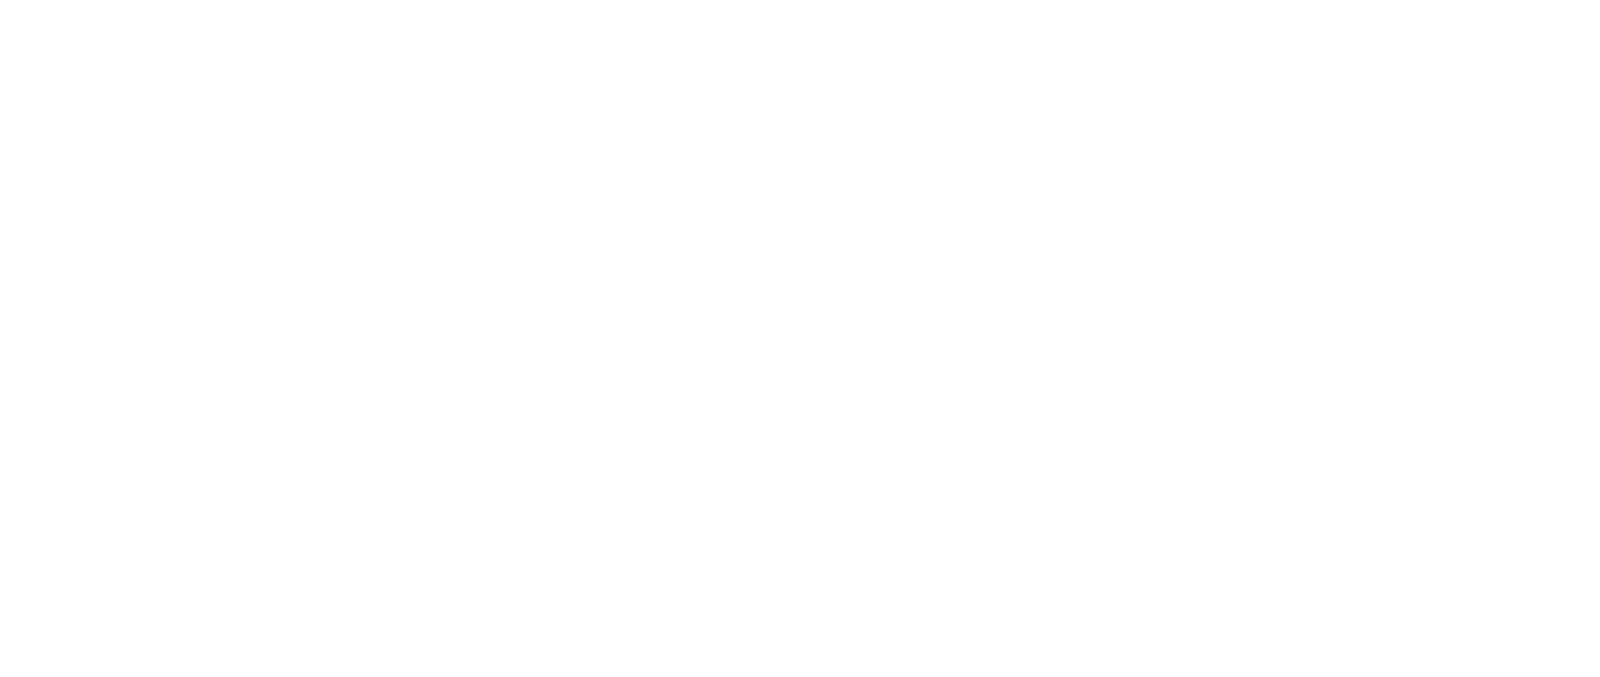 Alabama RV Park & Campground Association